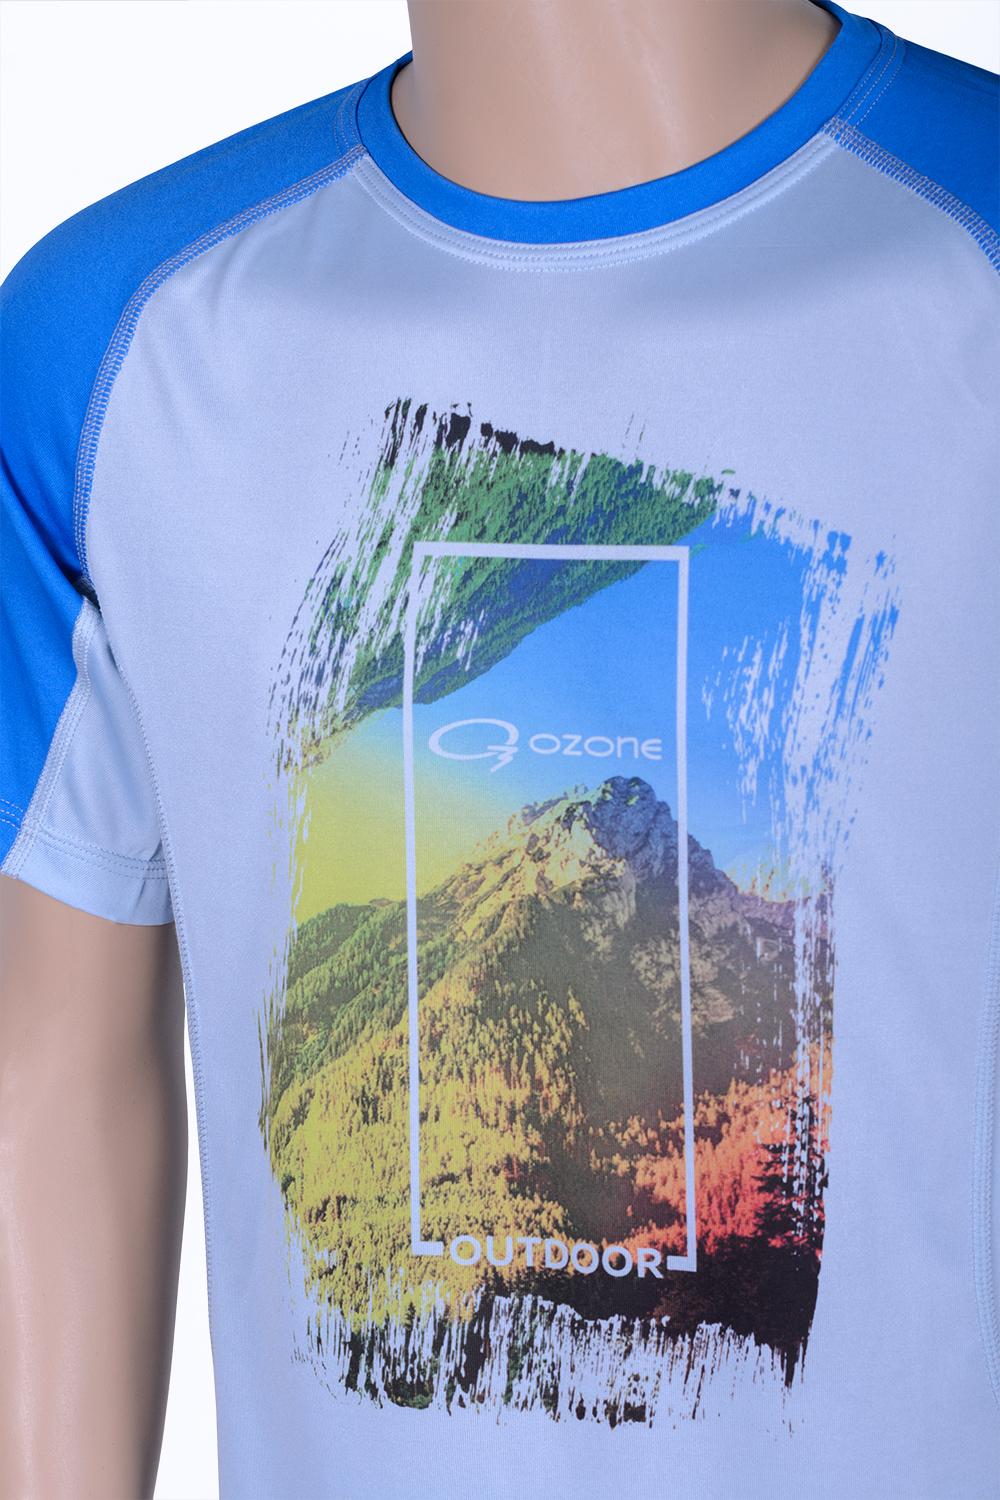 Озон футболки с надписями. Футболка Озон. Майка Озон. Крутые футболки на Озоне женские. Озон мужские футболки.